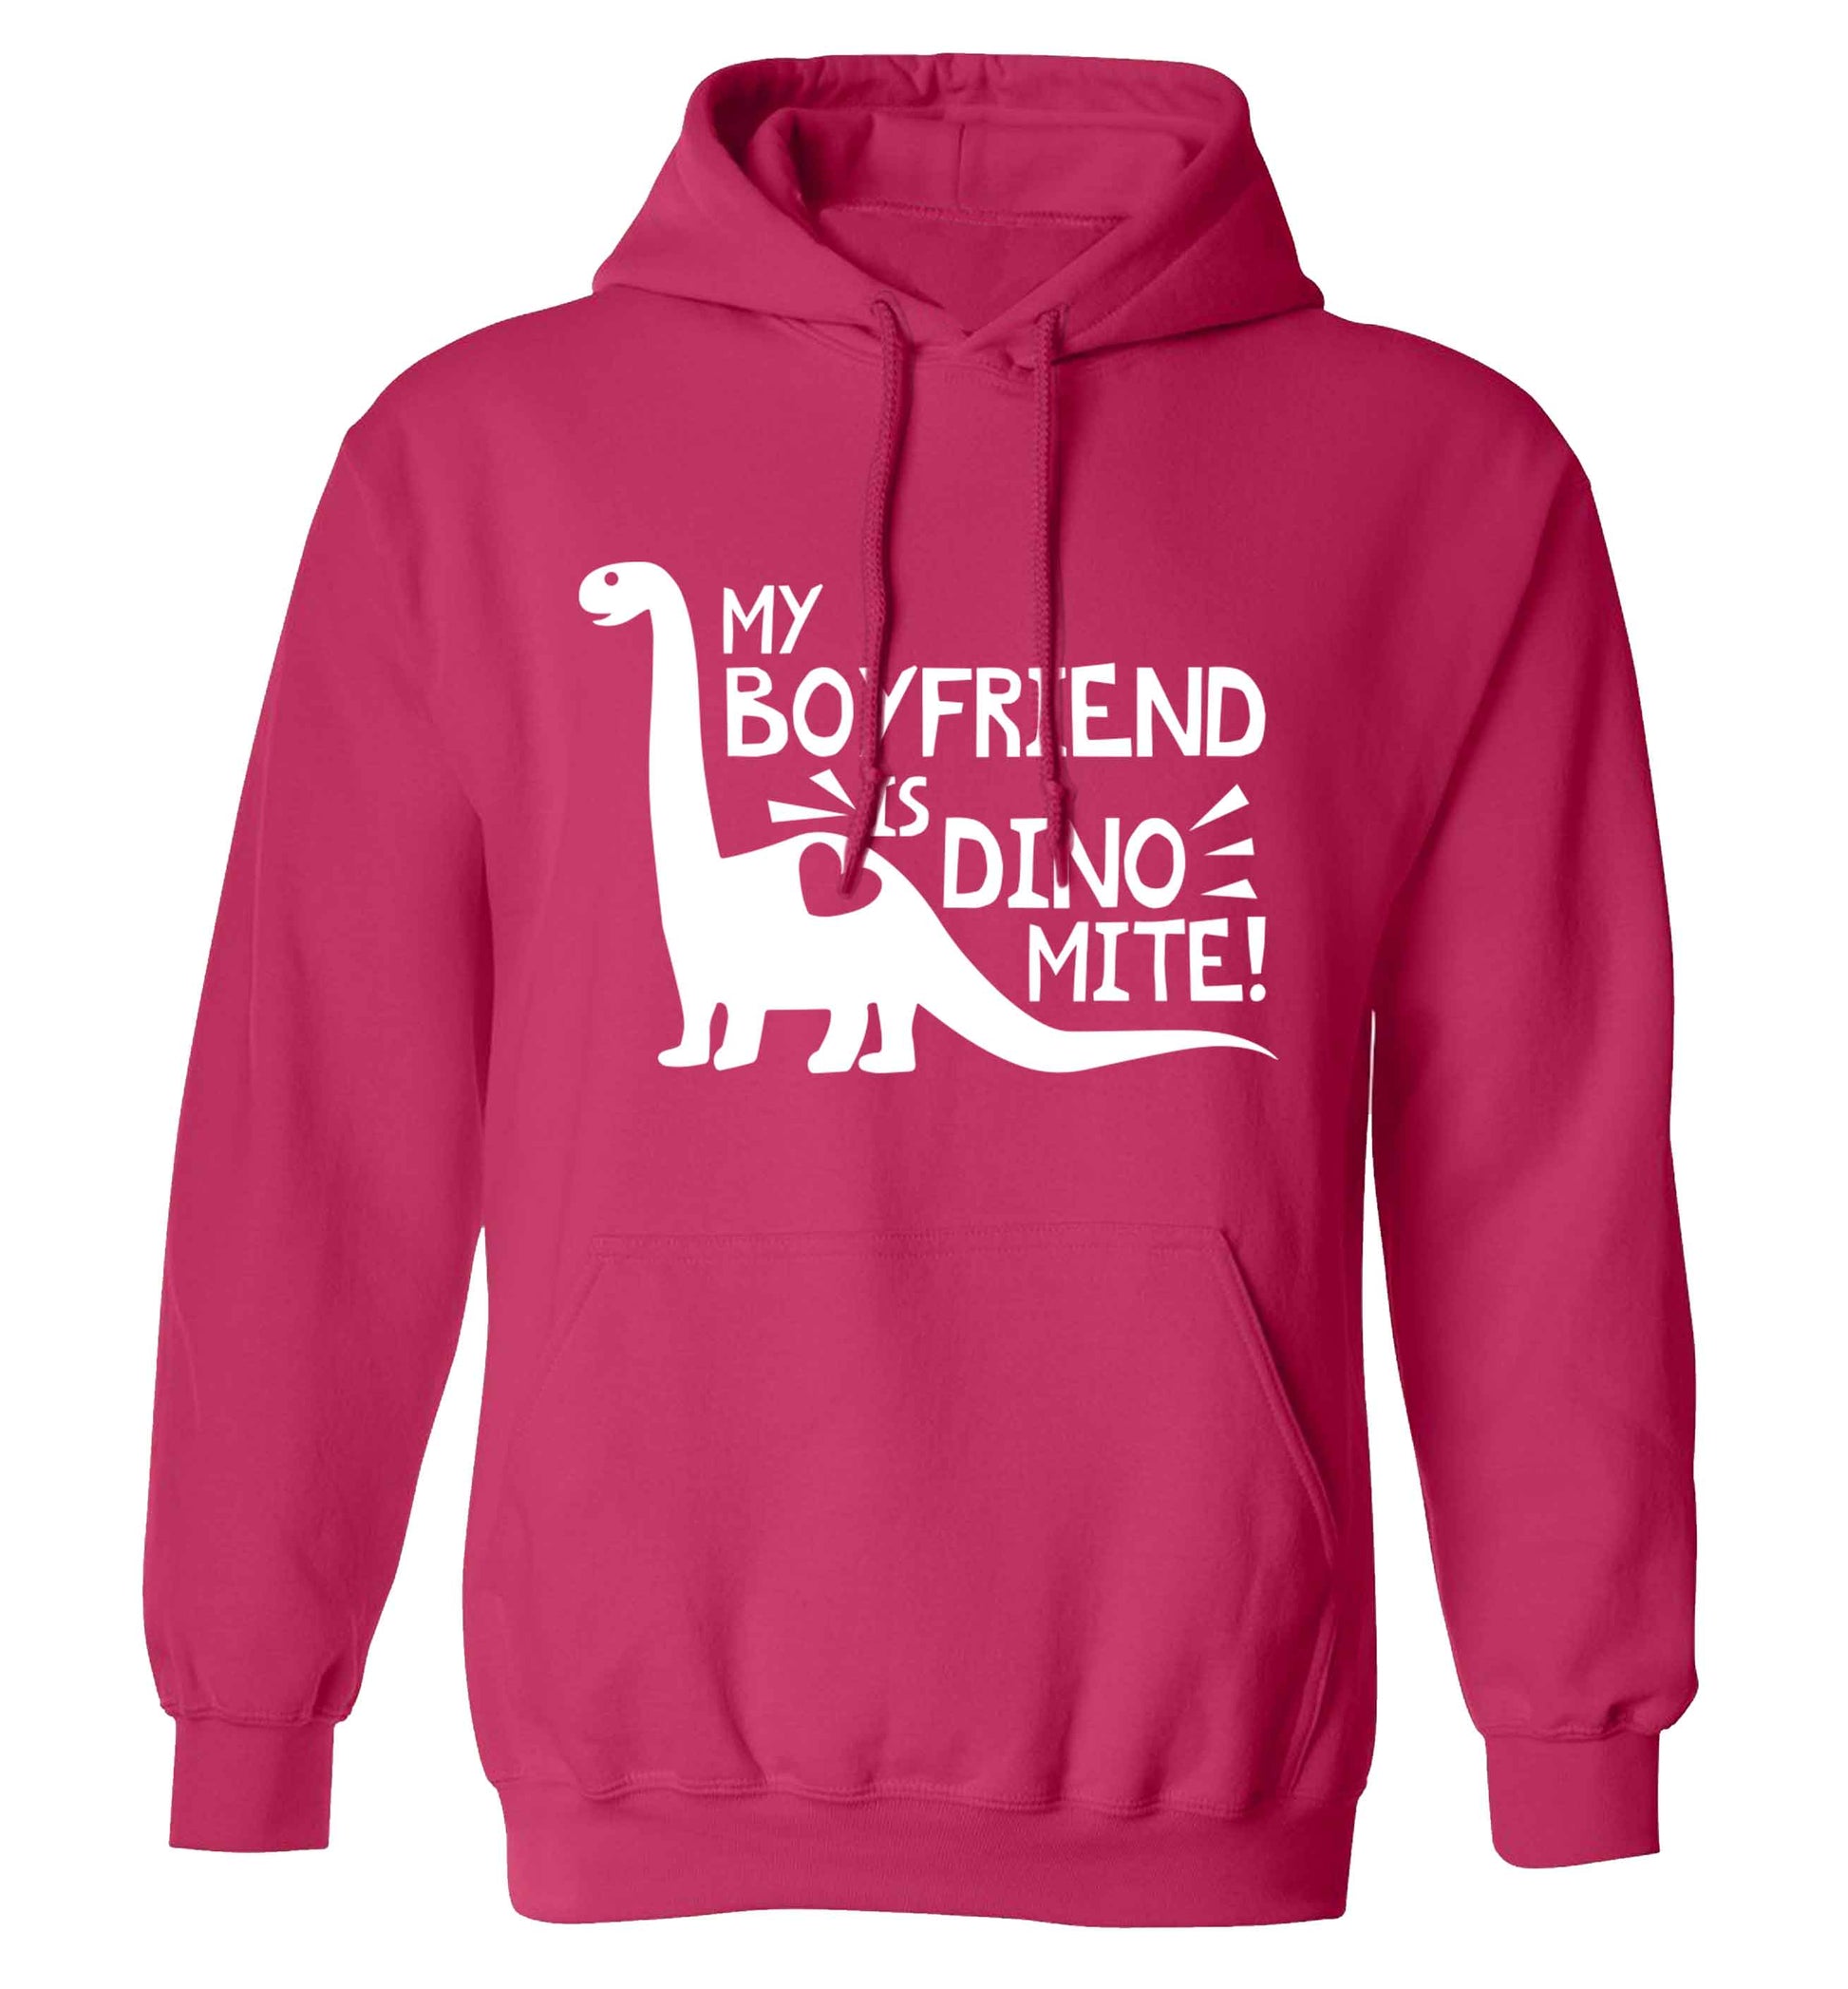 My boyfriend is dinomite! adults unisex pink hoodie 2XL